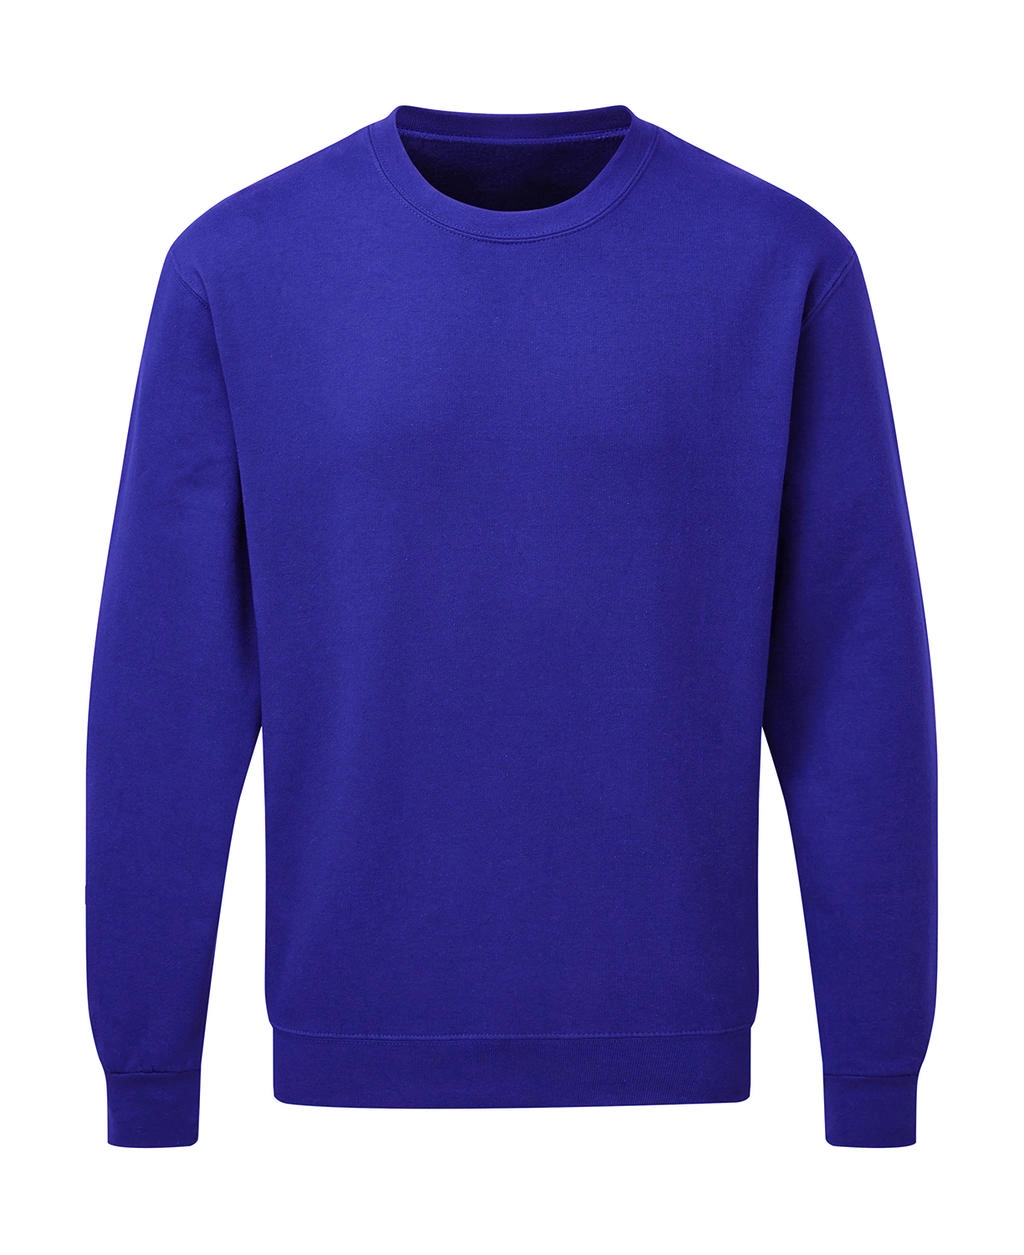 Crew Neck Sweatshirt Men zum Besticken und Bedrucken in der Farbe Royal Blue mit Ihren Logo, Schriftzug oder Motiv.